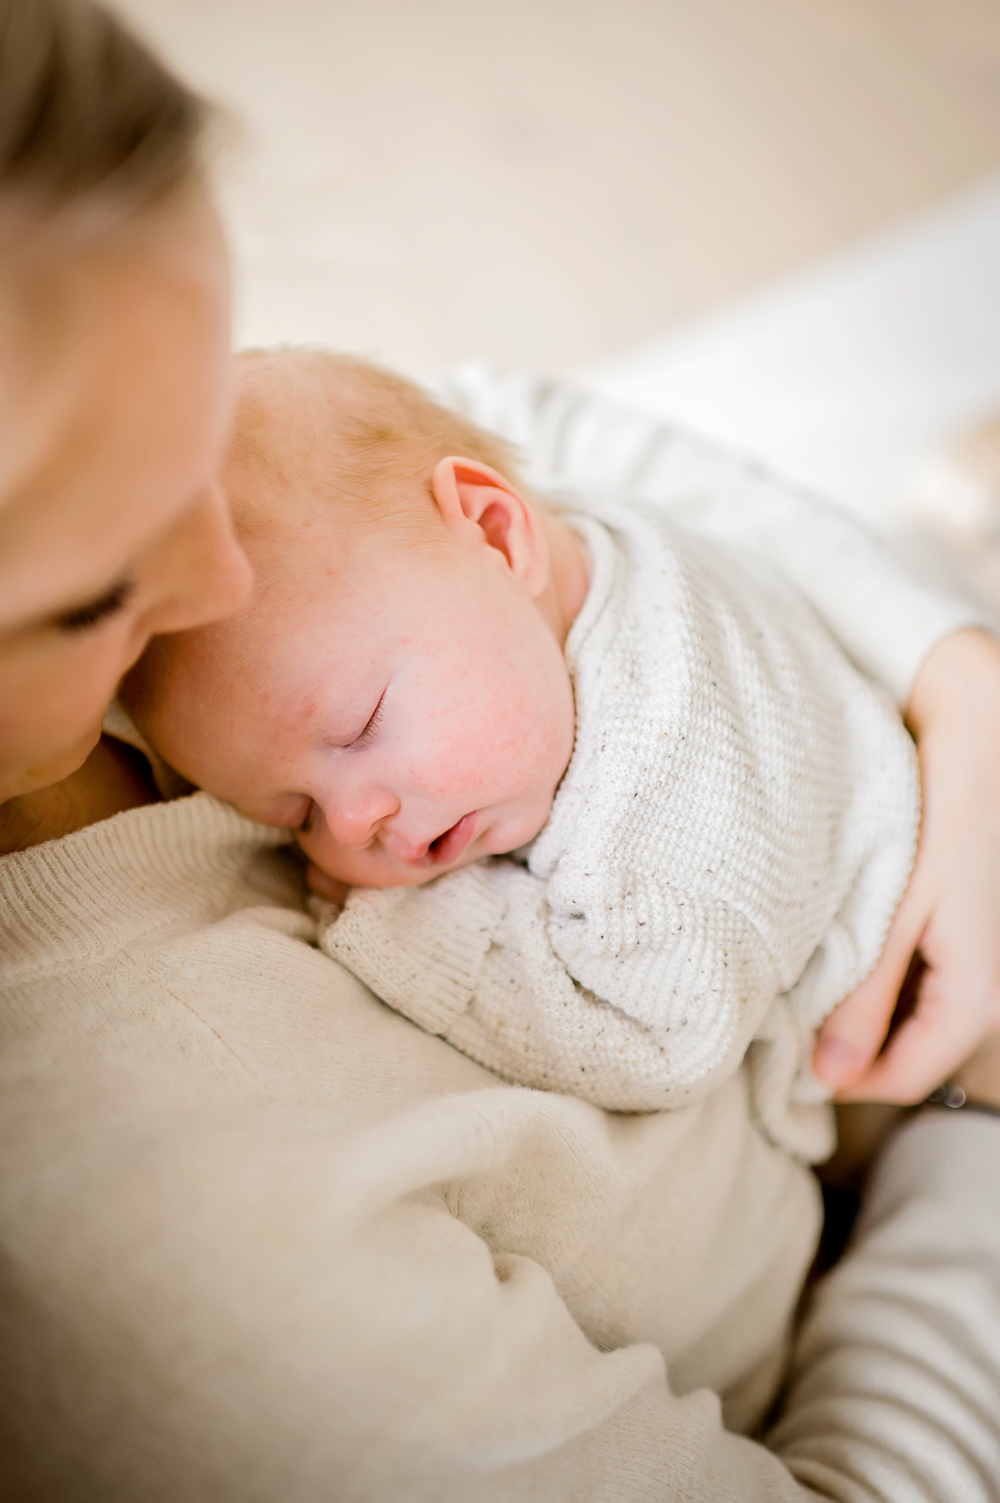 Eine junge Mutter, die ihr Baby in ihrem Schoß hält und liebevoll in ihre Arme schaut, während ihr Baby friedlich schläft.